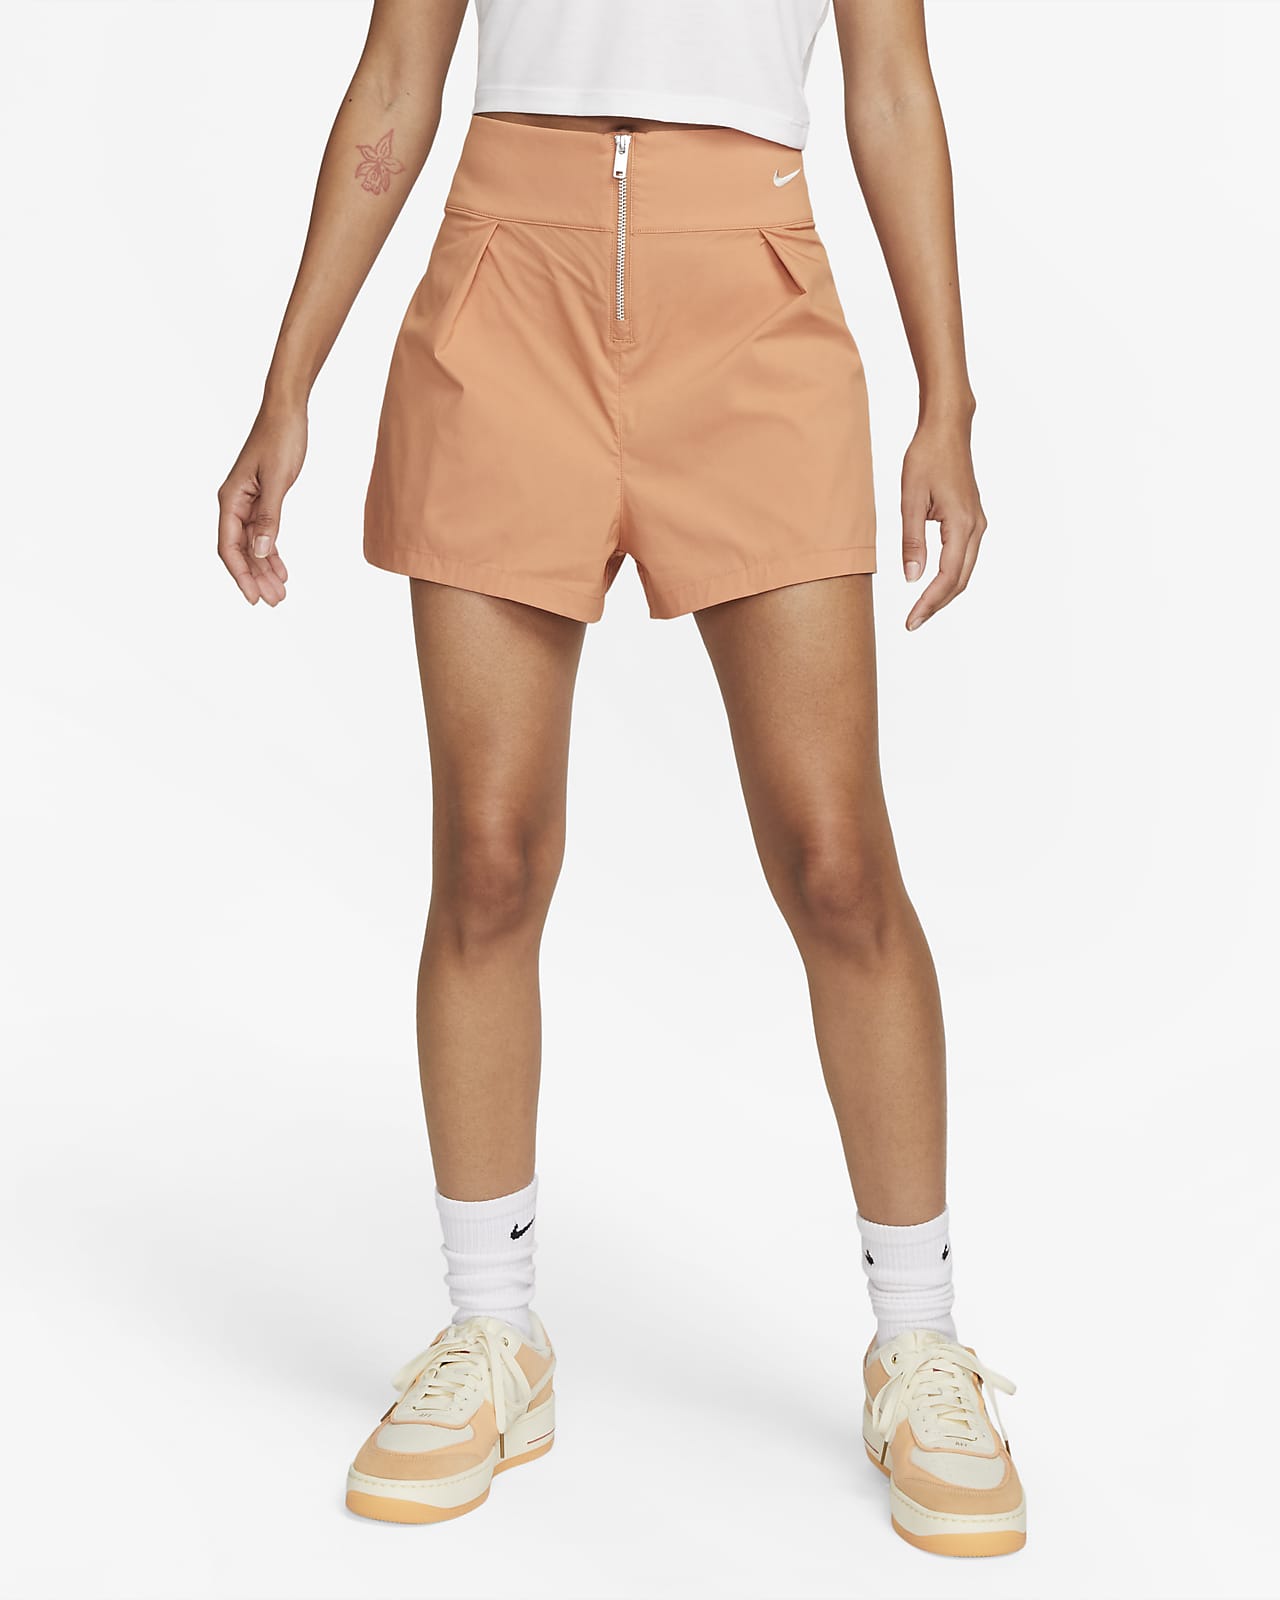 Khaki Shorts, Trouser shorts – KesleyBoutique